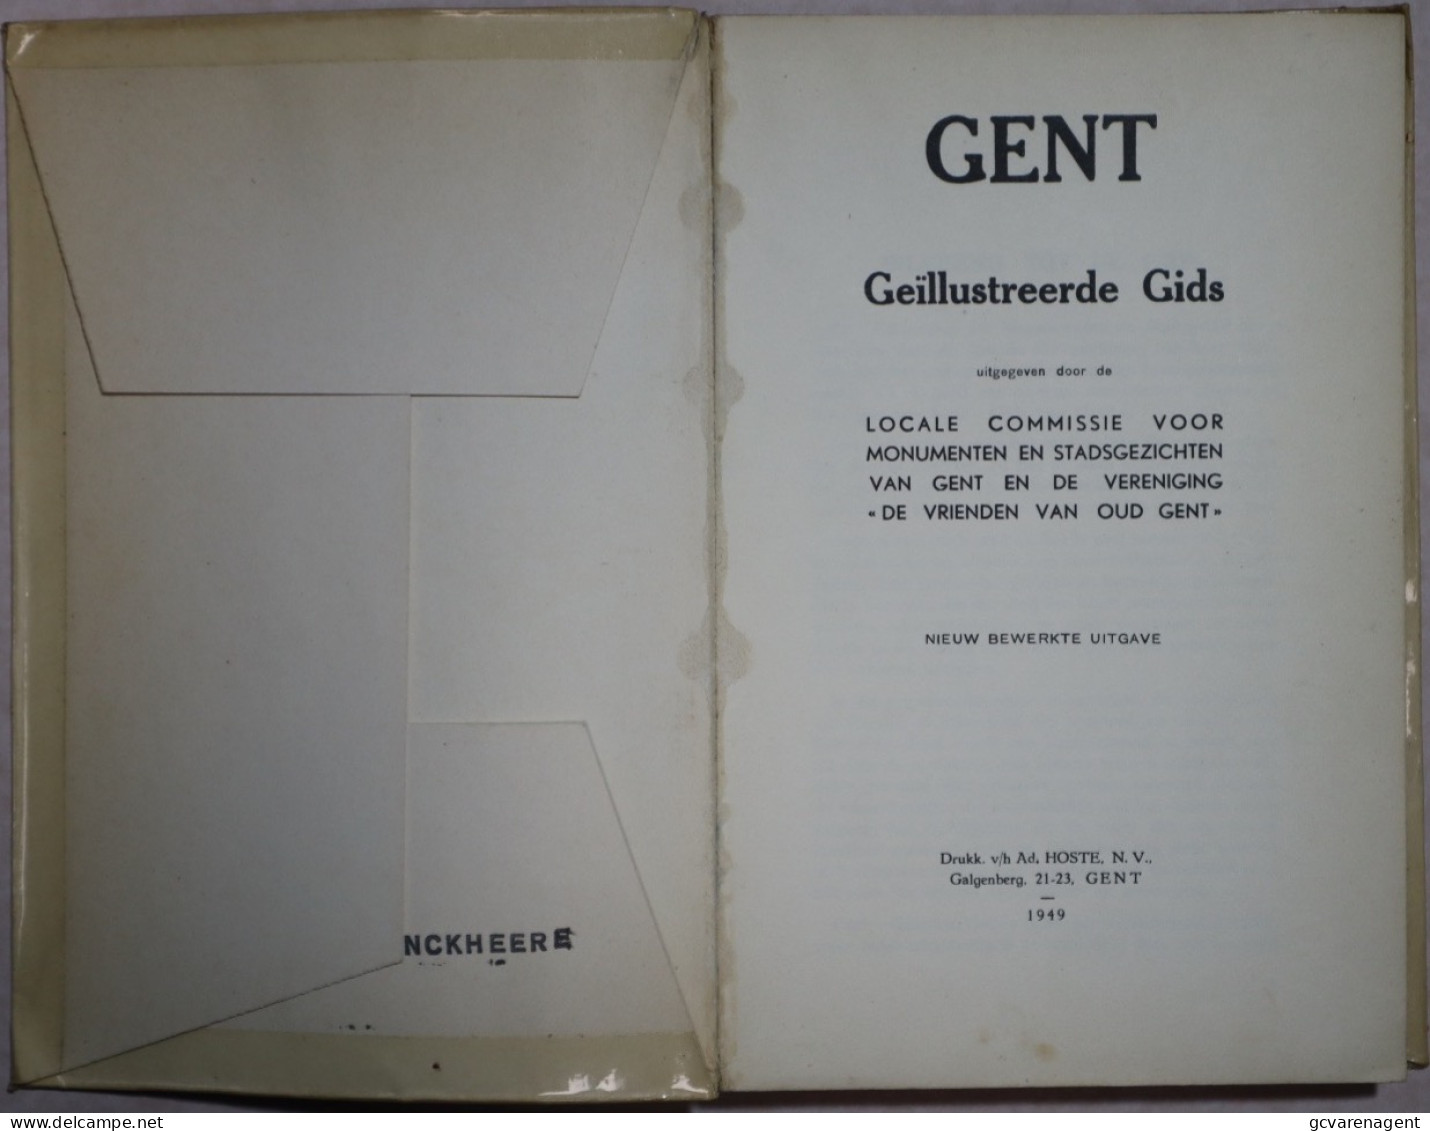 GENT 1949 GEÏLLUSTREEDE GIDS + BIJLAGE = 192 BLZ = 84 AFBEELDINGEN = GOEDE STAAT 220 X 115 MM. ZIE AFBEELDINGEN - Histoire